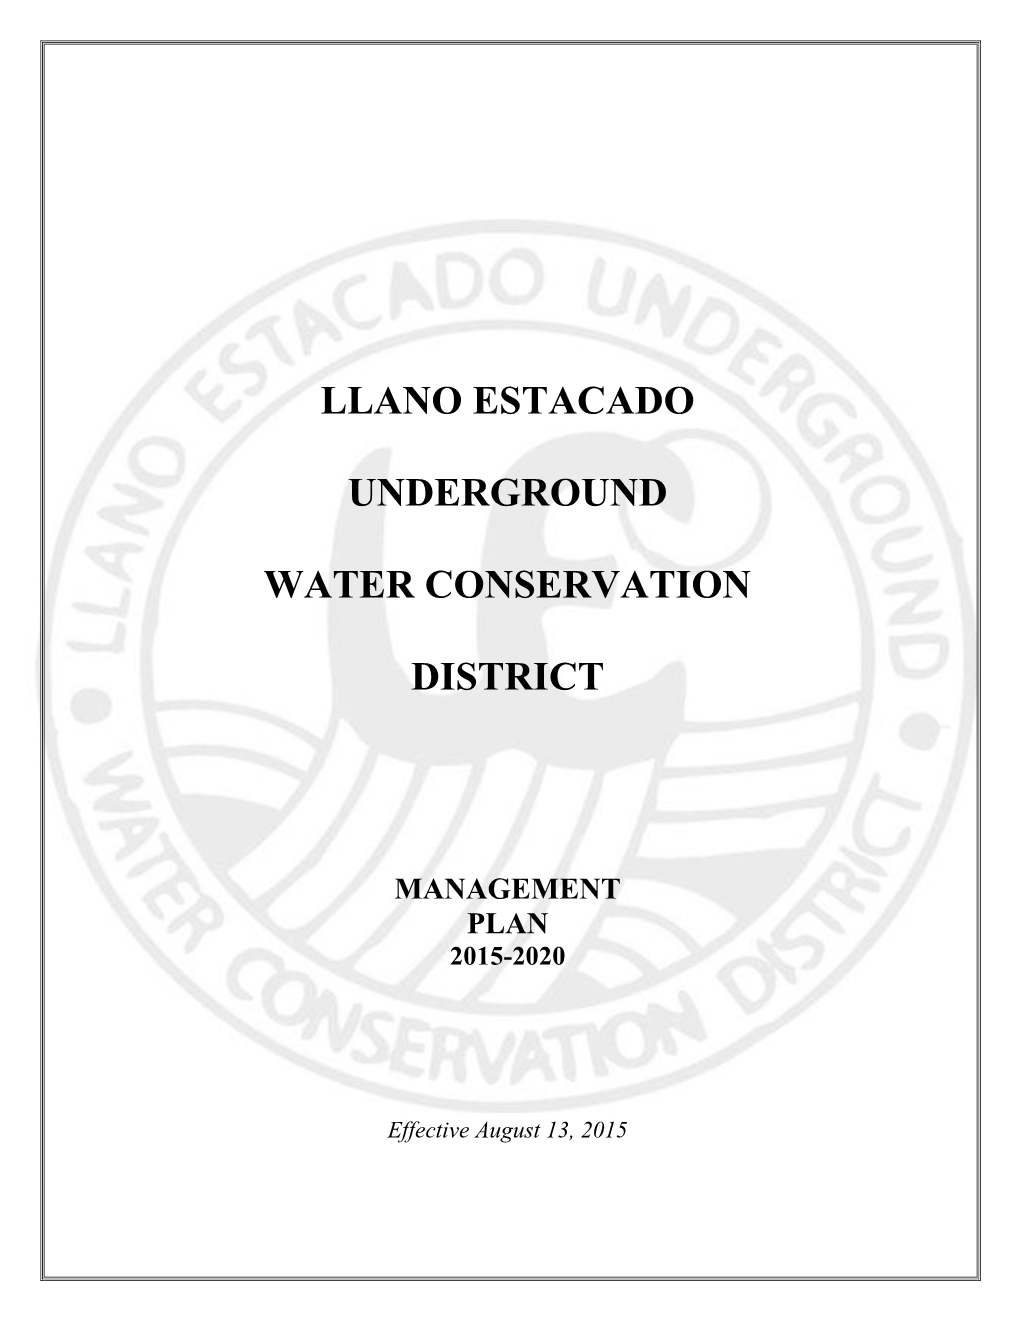 Llano Estacado Underground Water